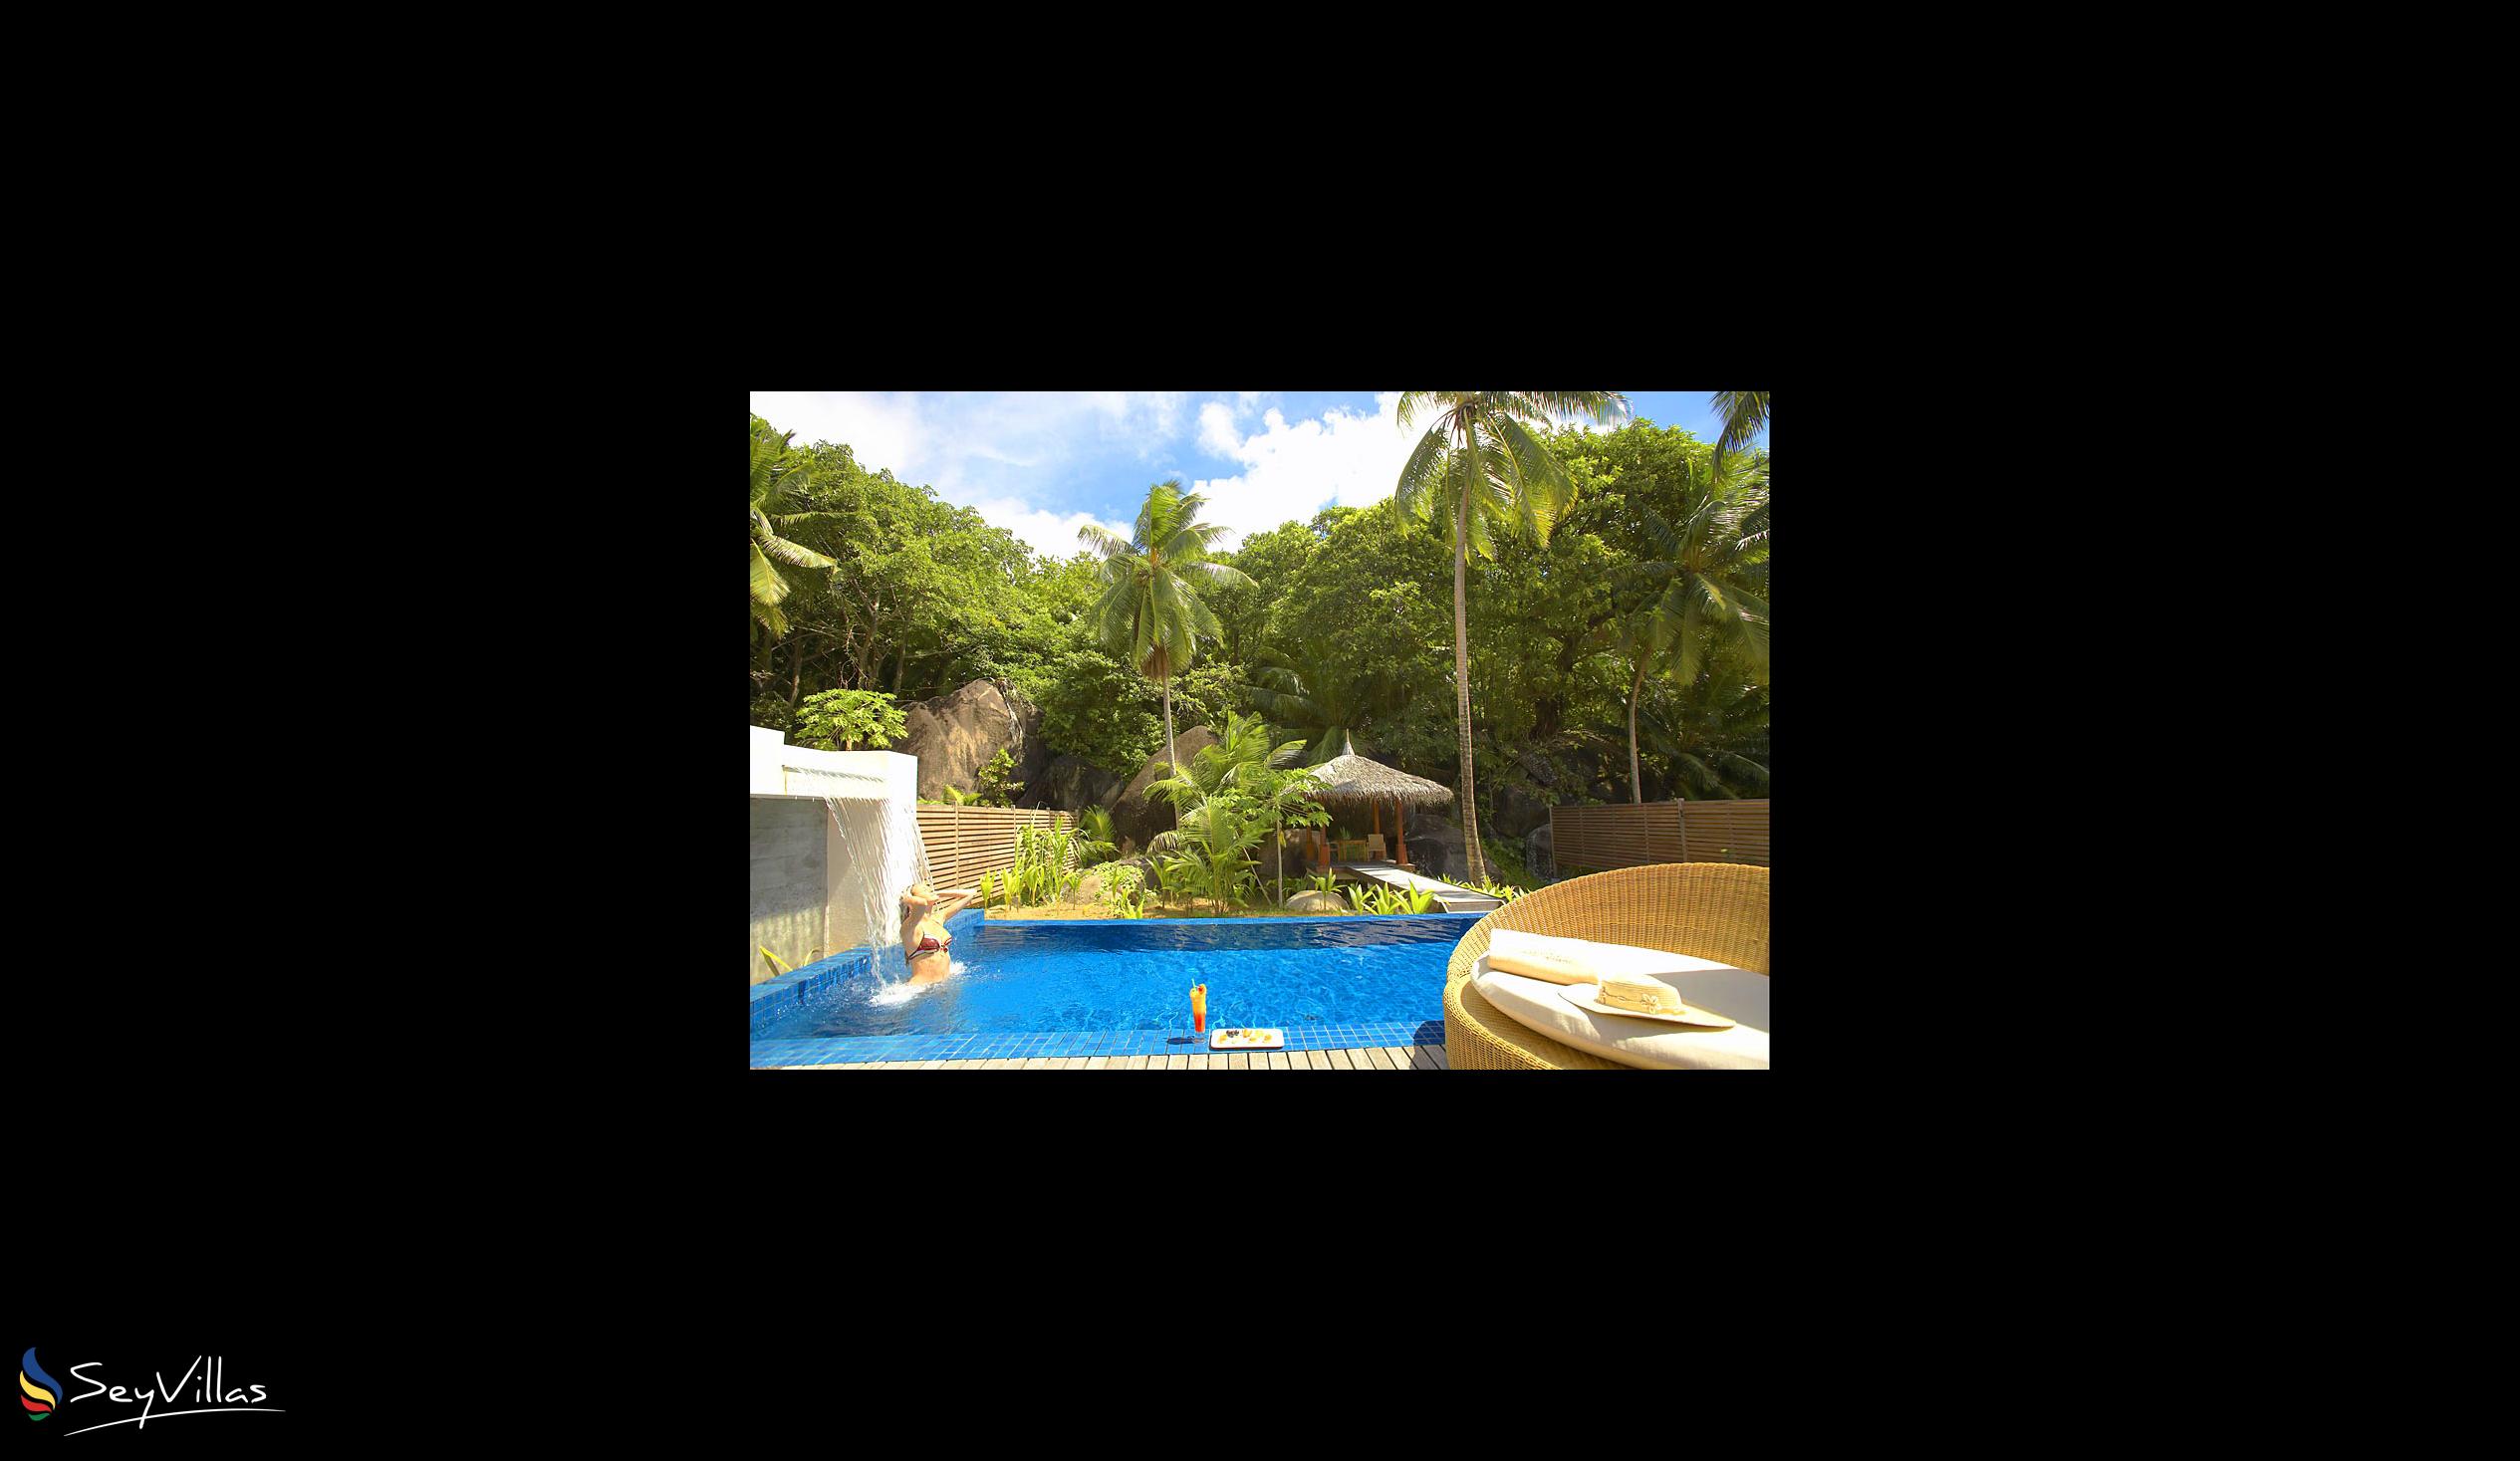 Foto 9: Hilton Seychelles Labriz Resort & Spa - Aussenbereich - Silhouette Island (Seychellen)